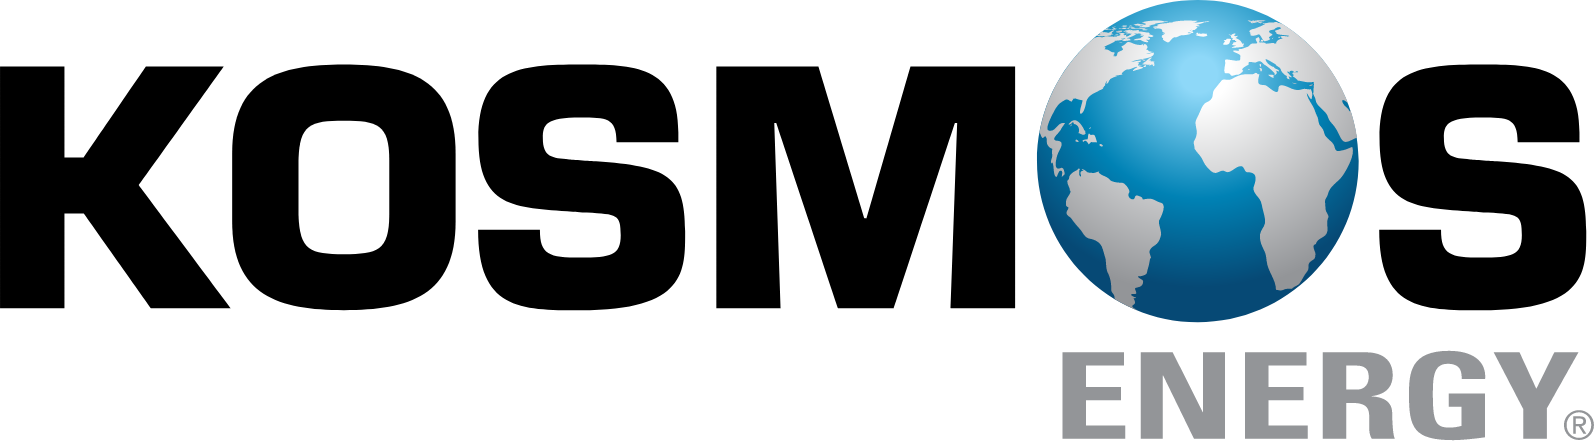 Kosmos Energy logo large (transparent PNG)